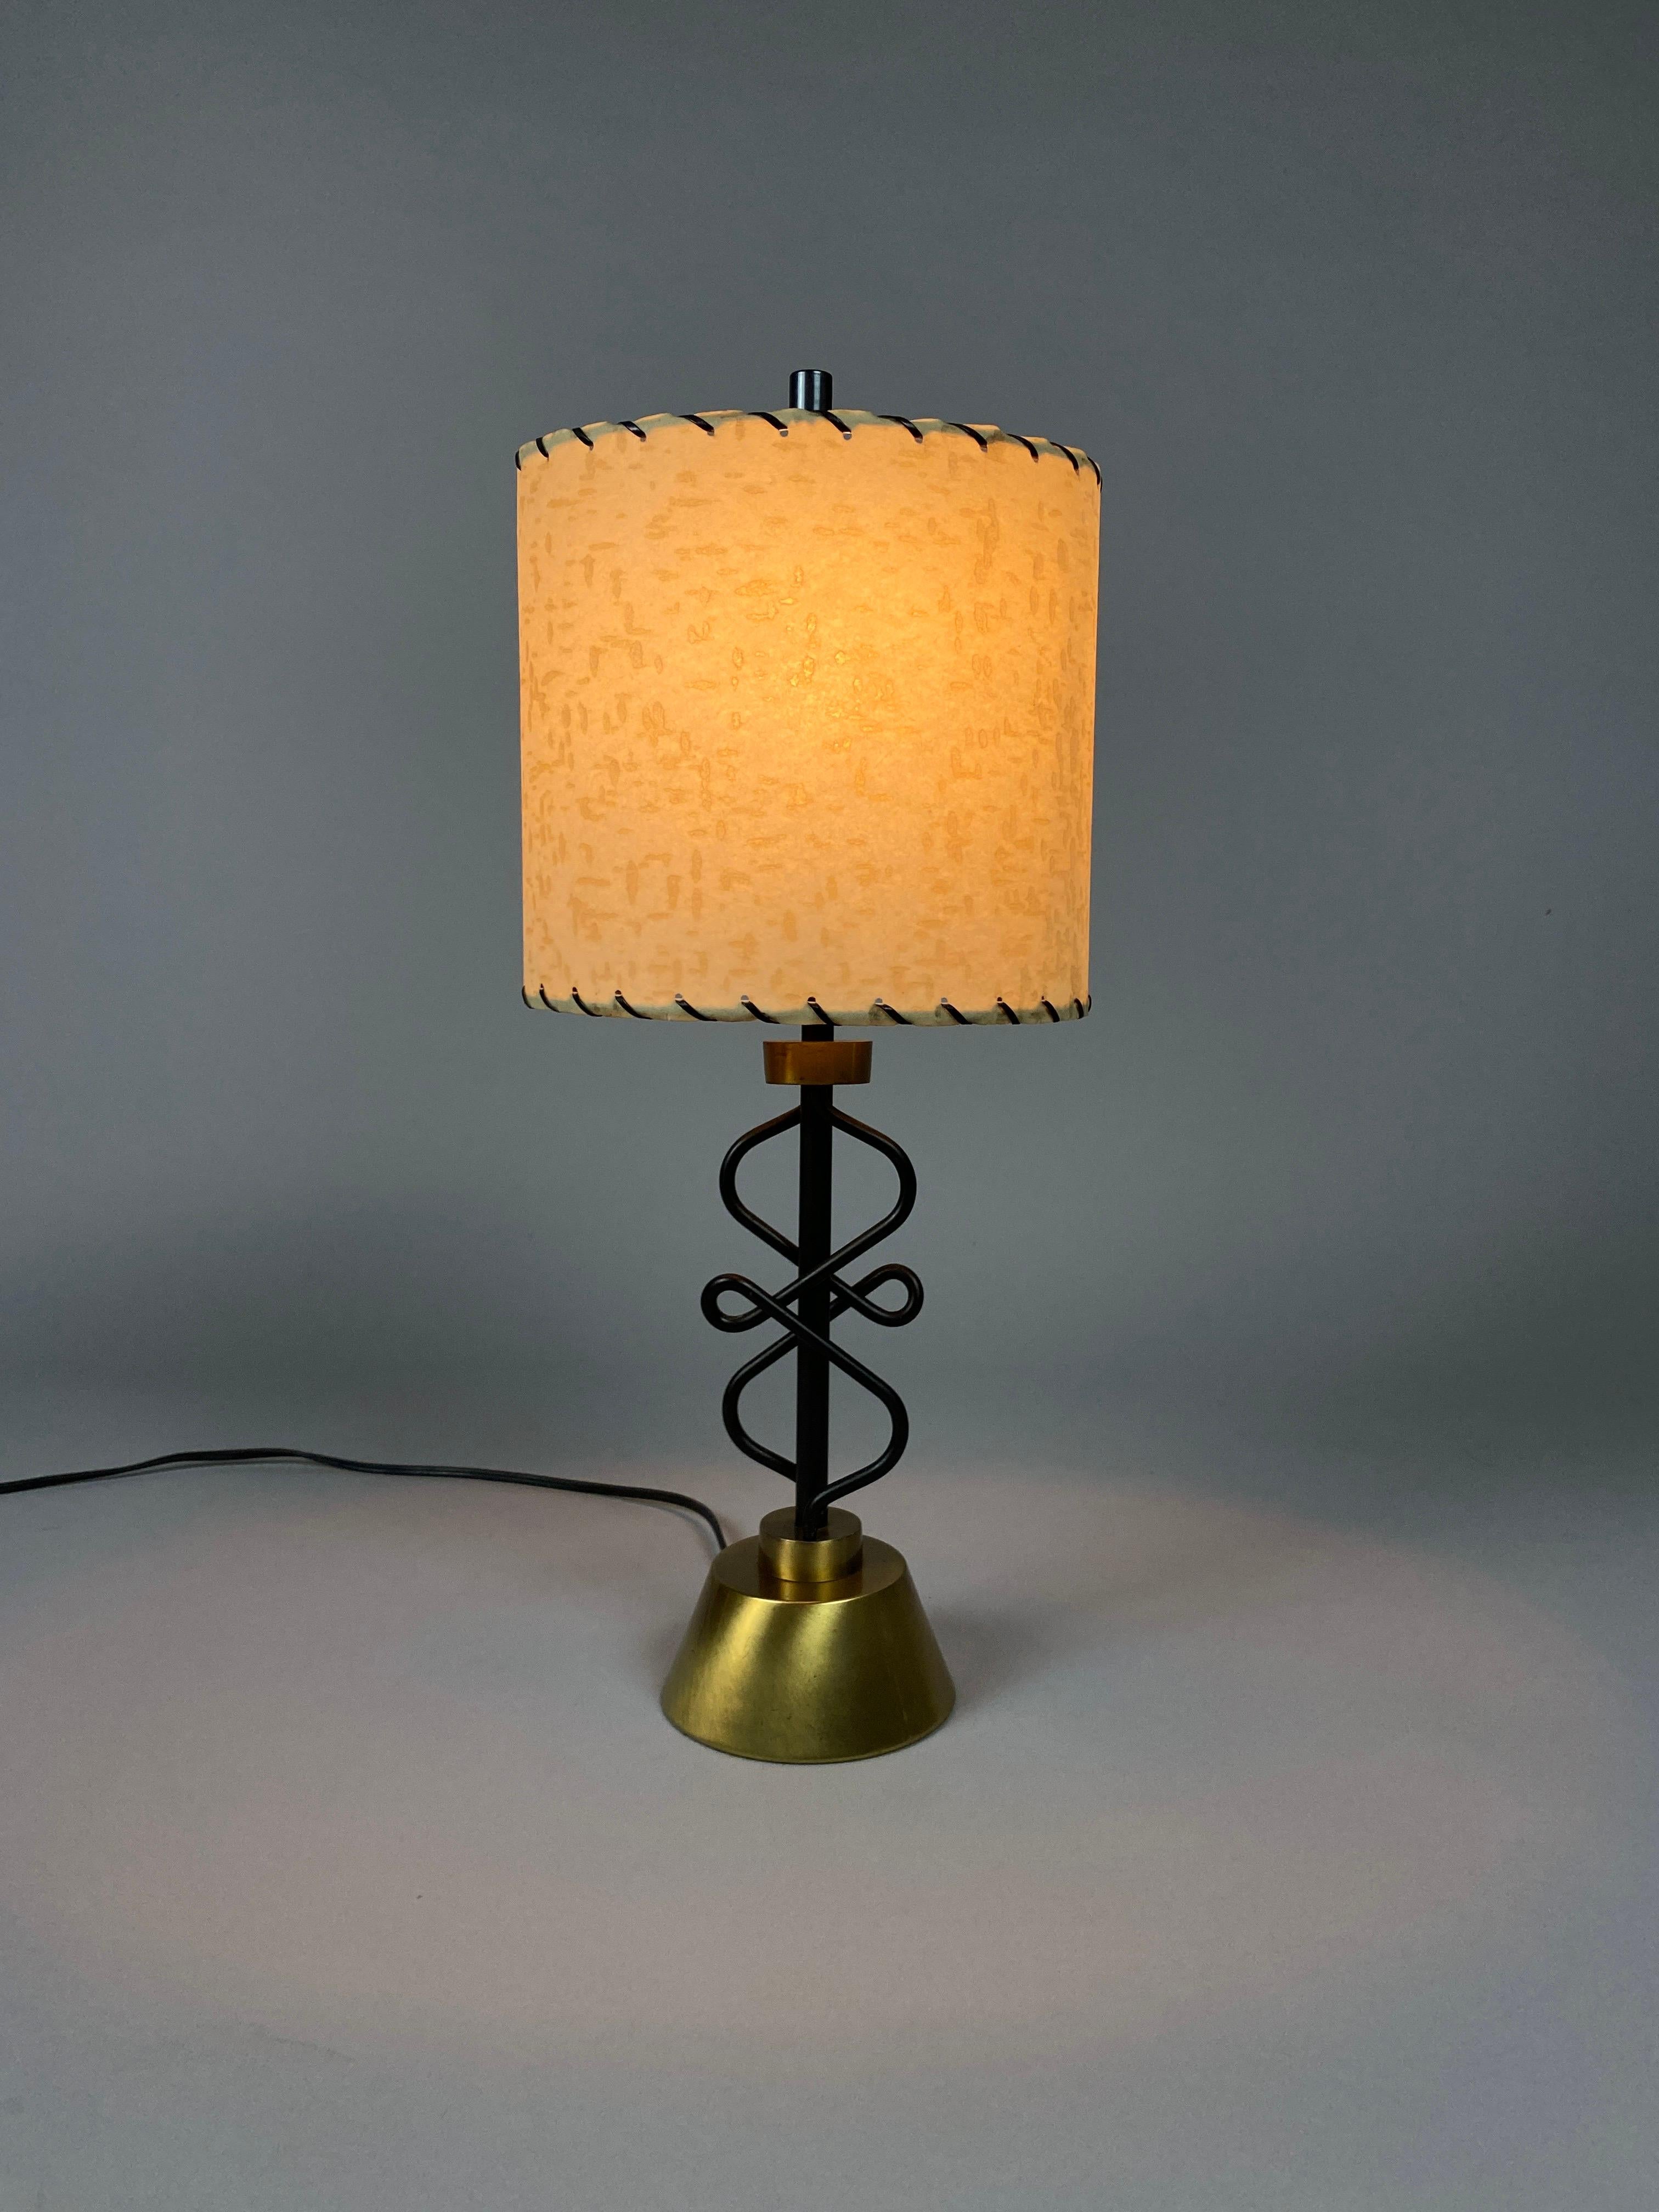 Ein zeitloses Duo mit Raffinesse und Charme: die Mid-Century Table/Bedside Lamps von Majestic Lamp Co. Lassen Sie sich von der Faszination des Mid-Century-Designs anstecken - mit diesen exquisiten Lampen, die mühelos Stil, Handwerkskunst und